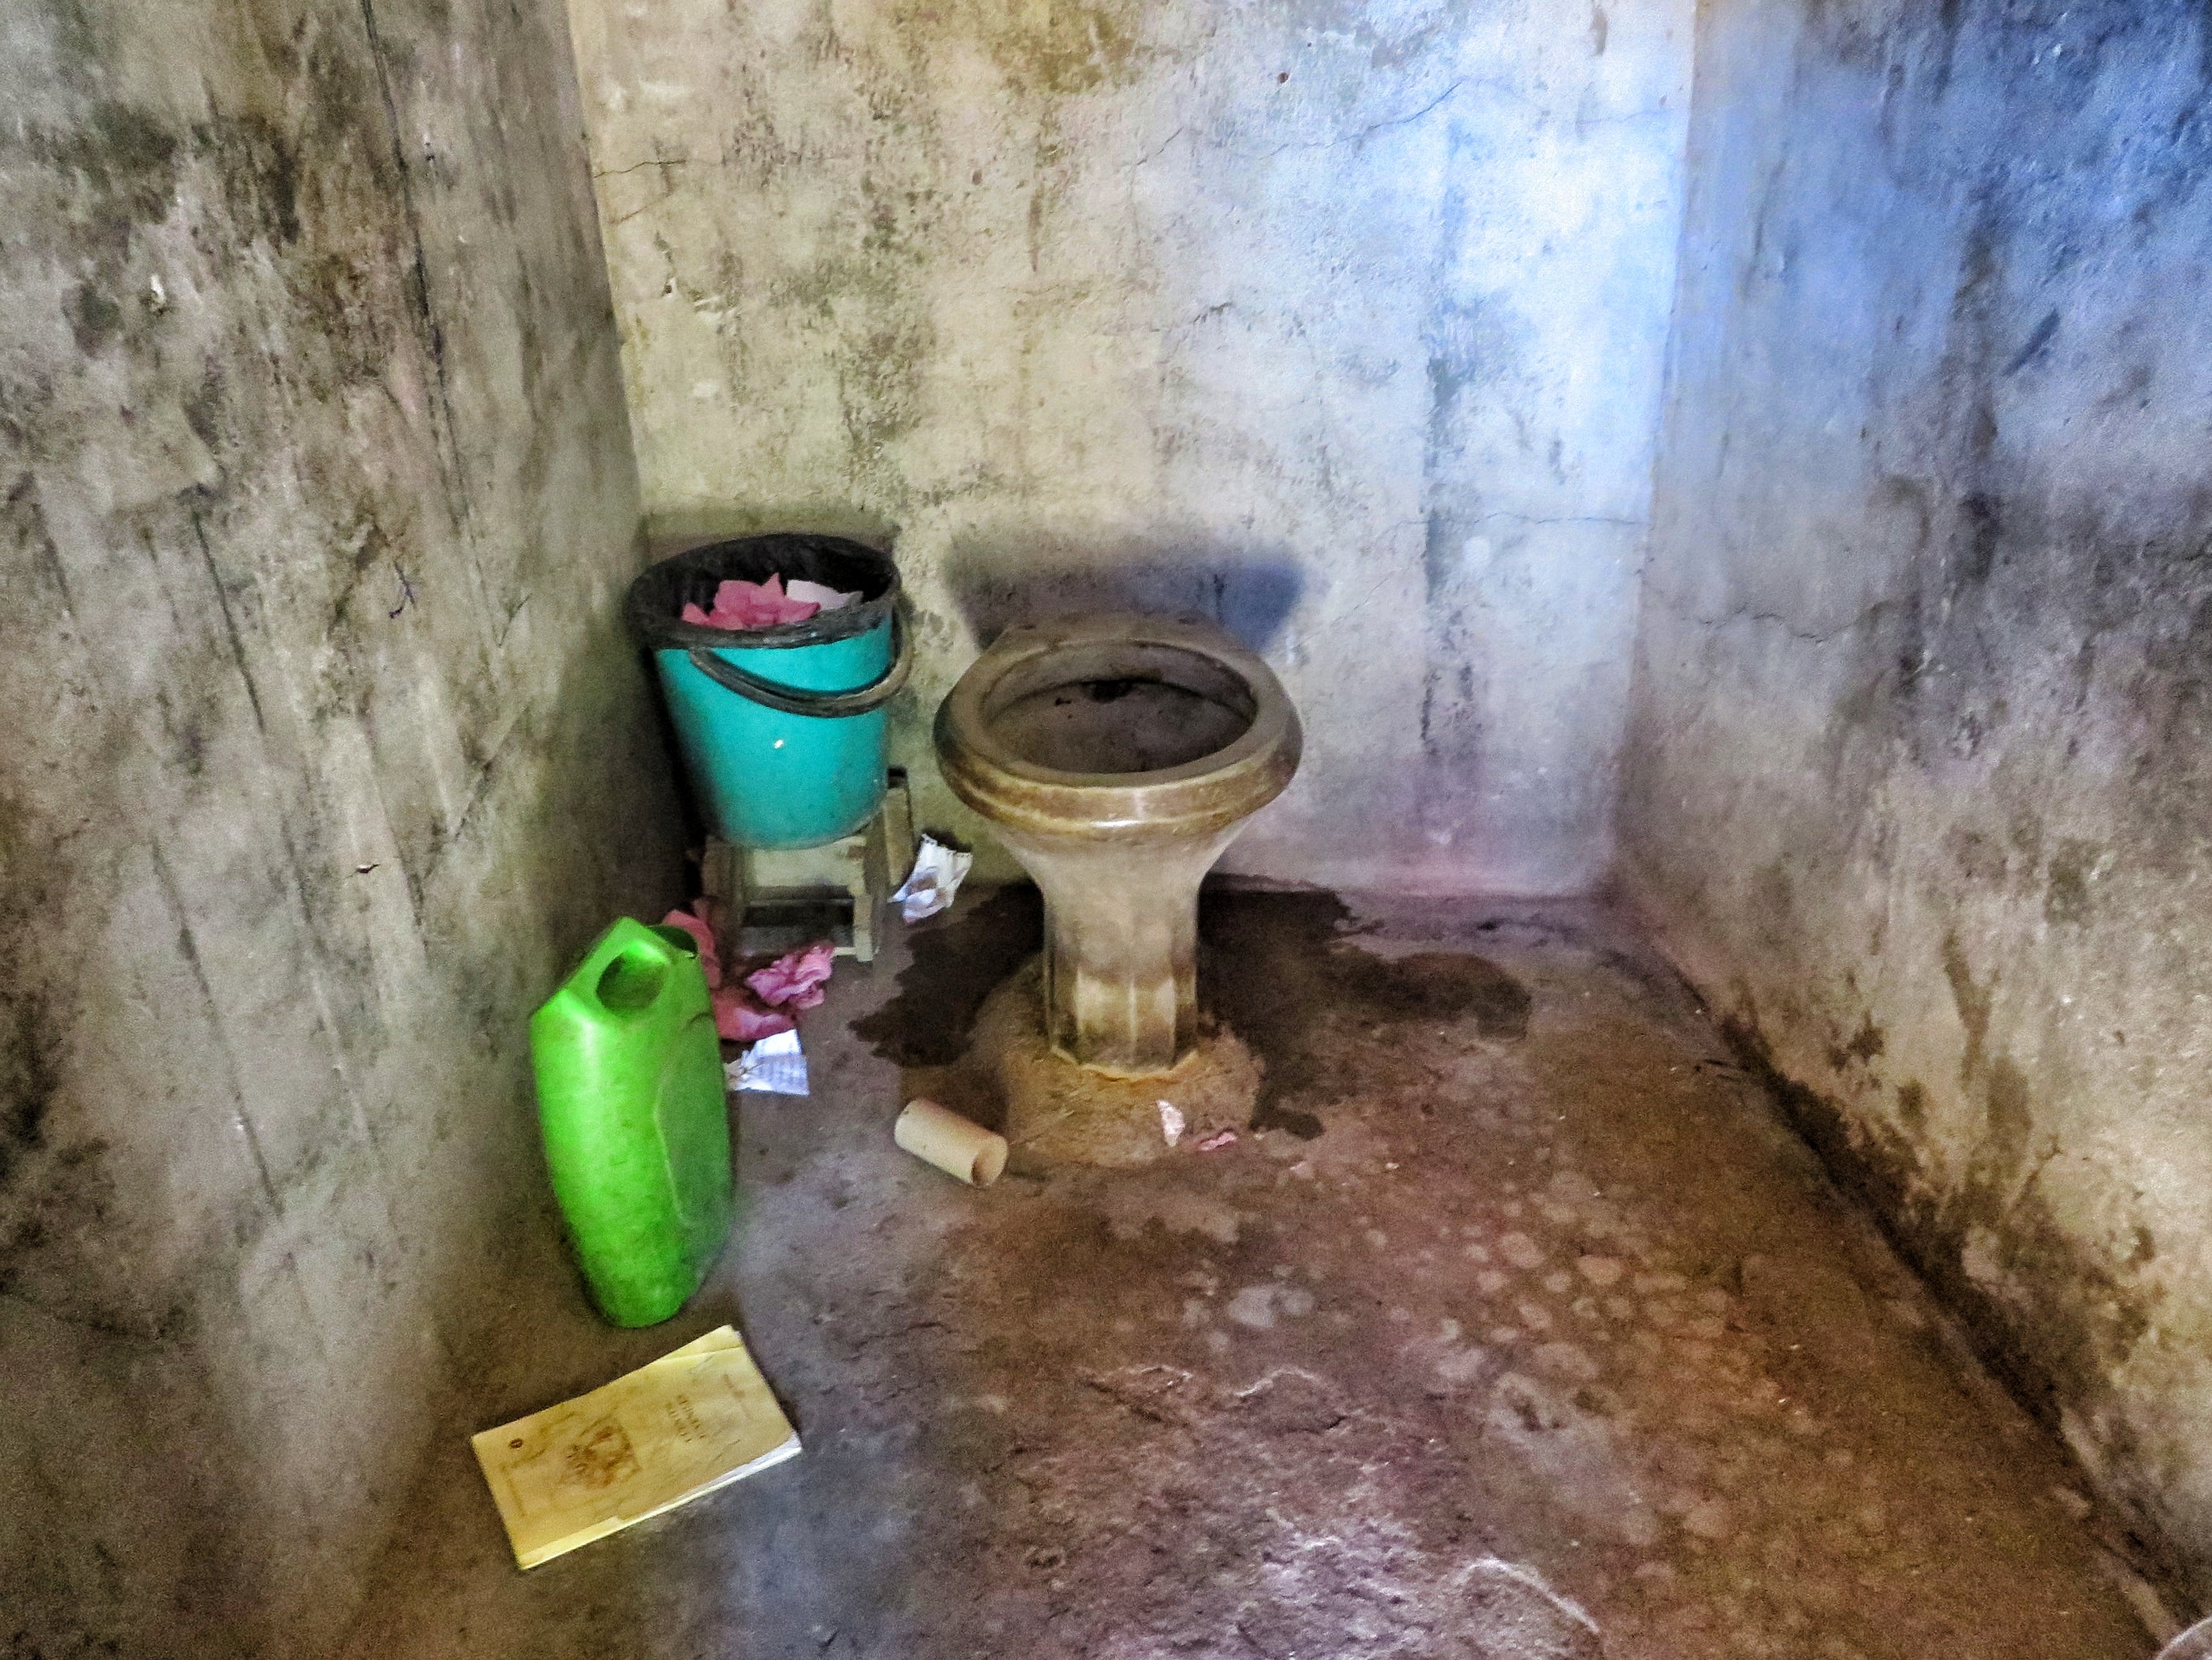 Indian school toilet